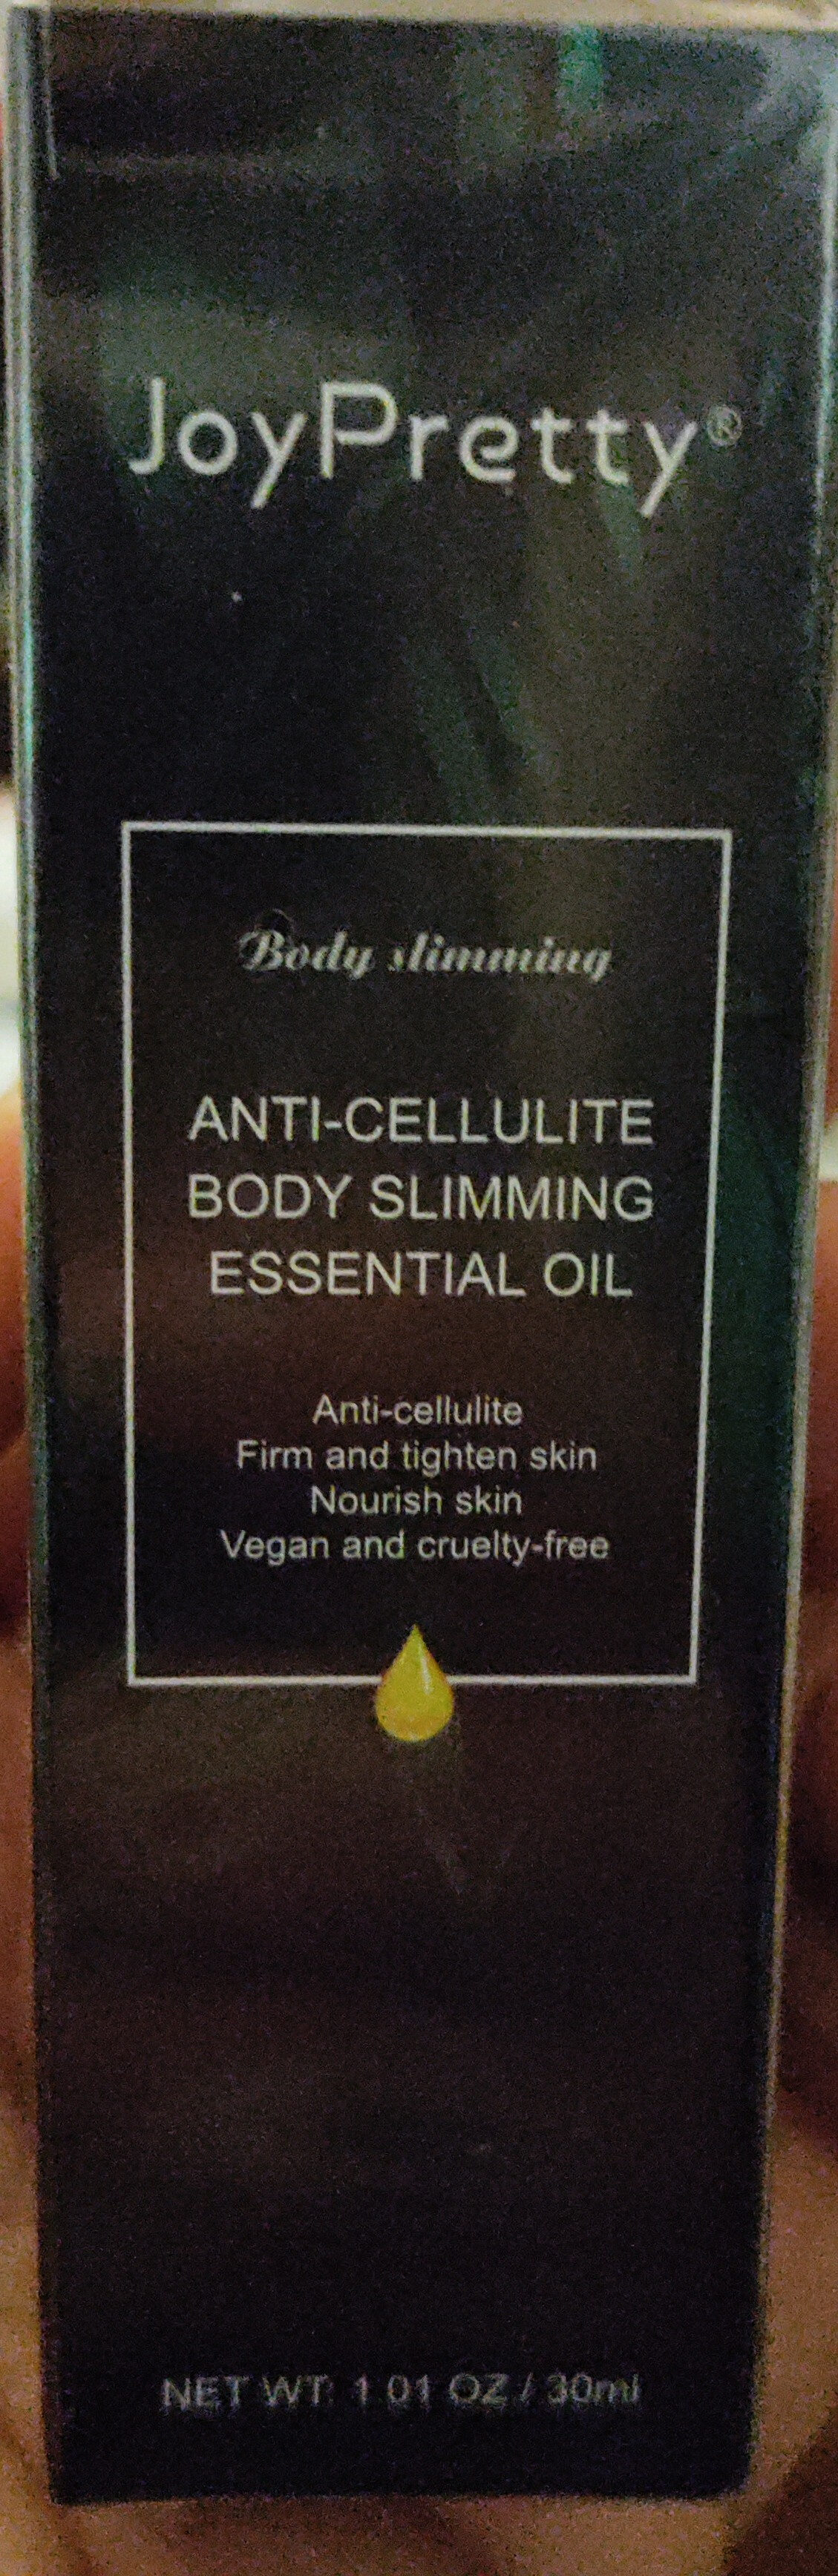 Anti-cellulite Body slimming essential oil - Продукт - fr